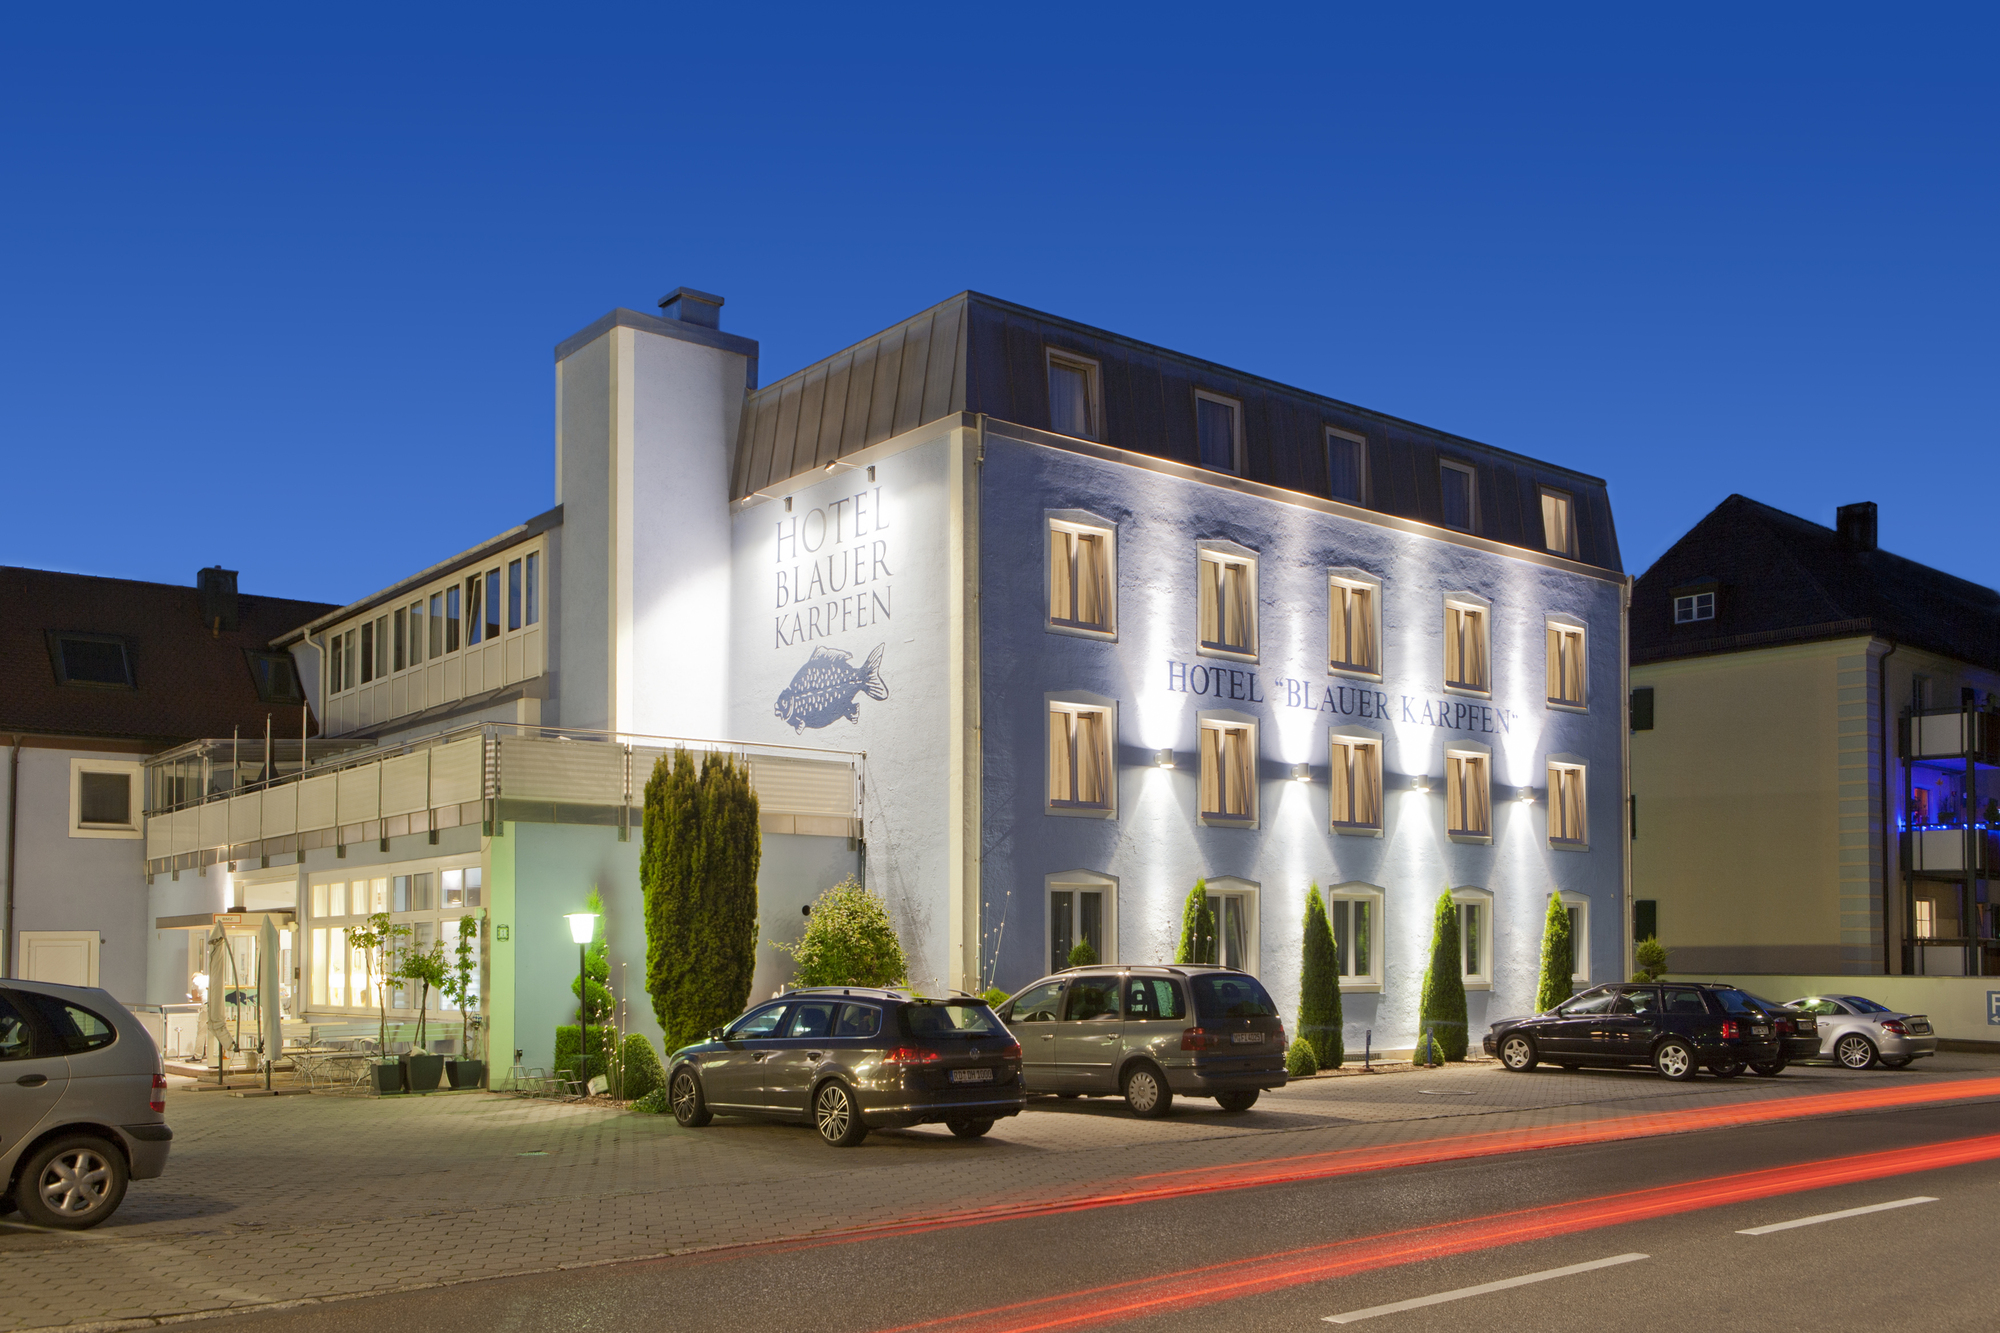 Das Städtetrip Hotel blauer Karpfen, Oberschleißheim bei München